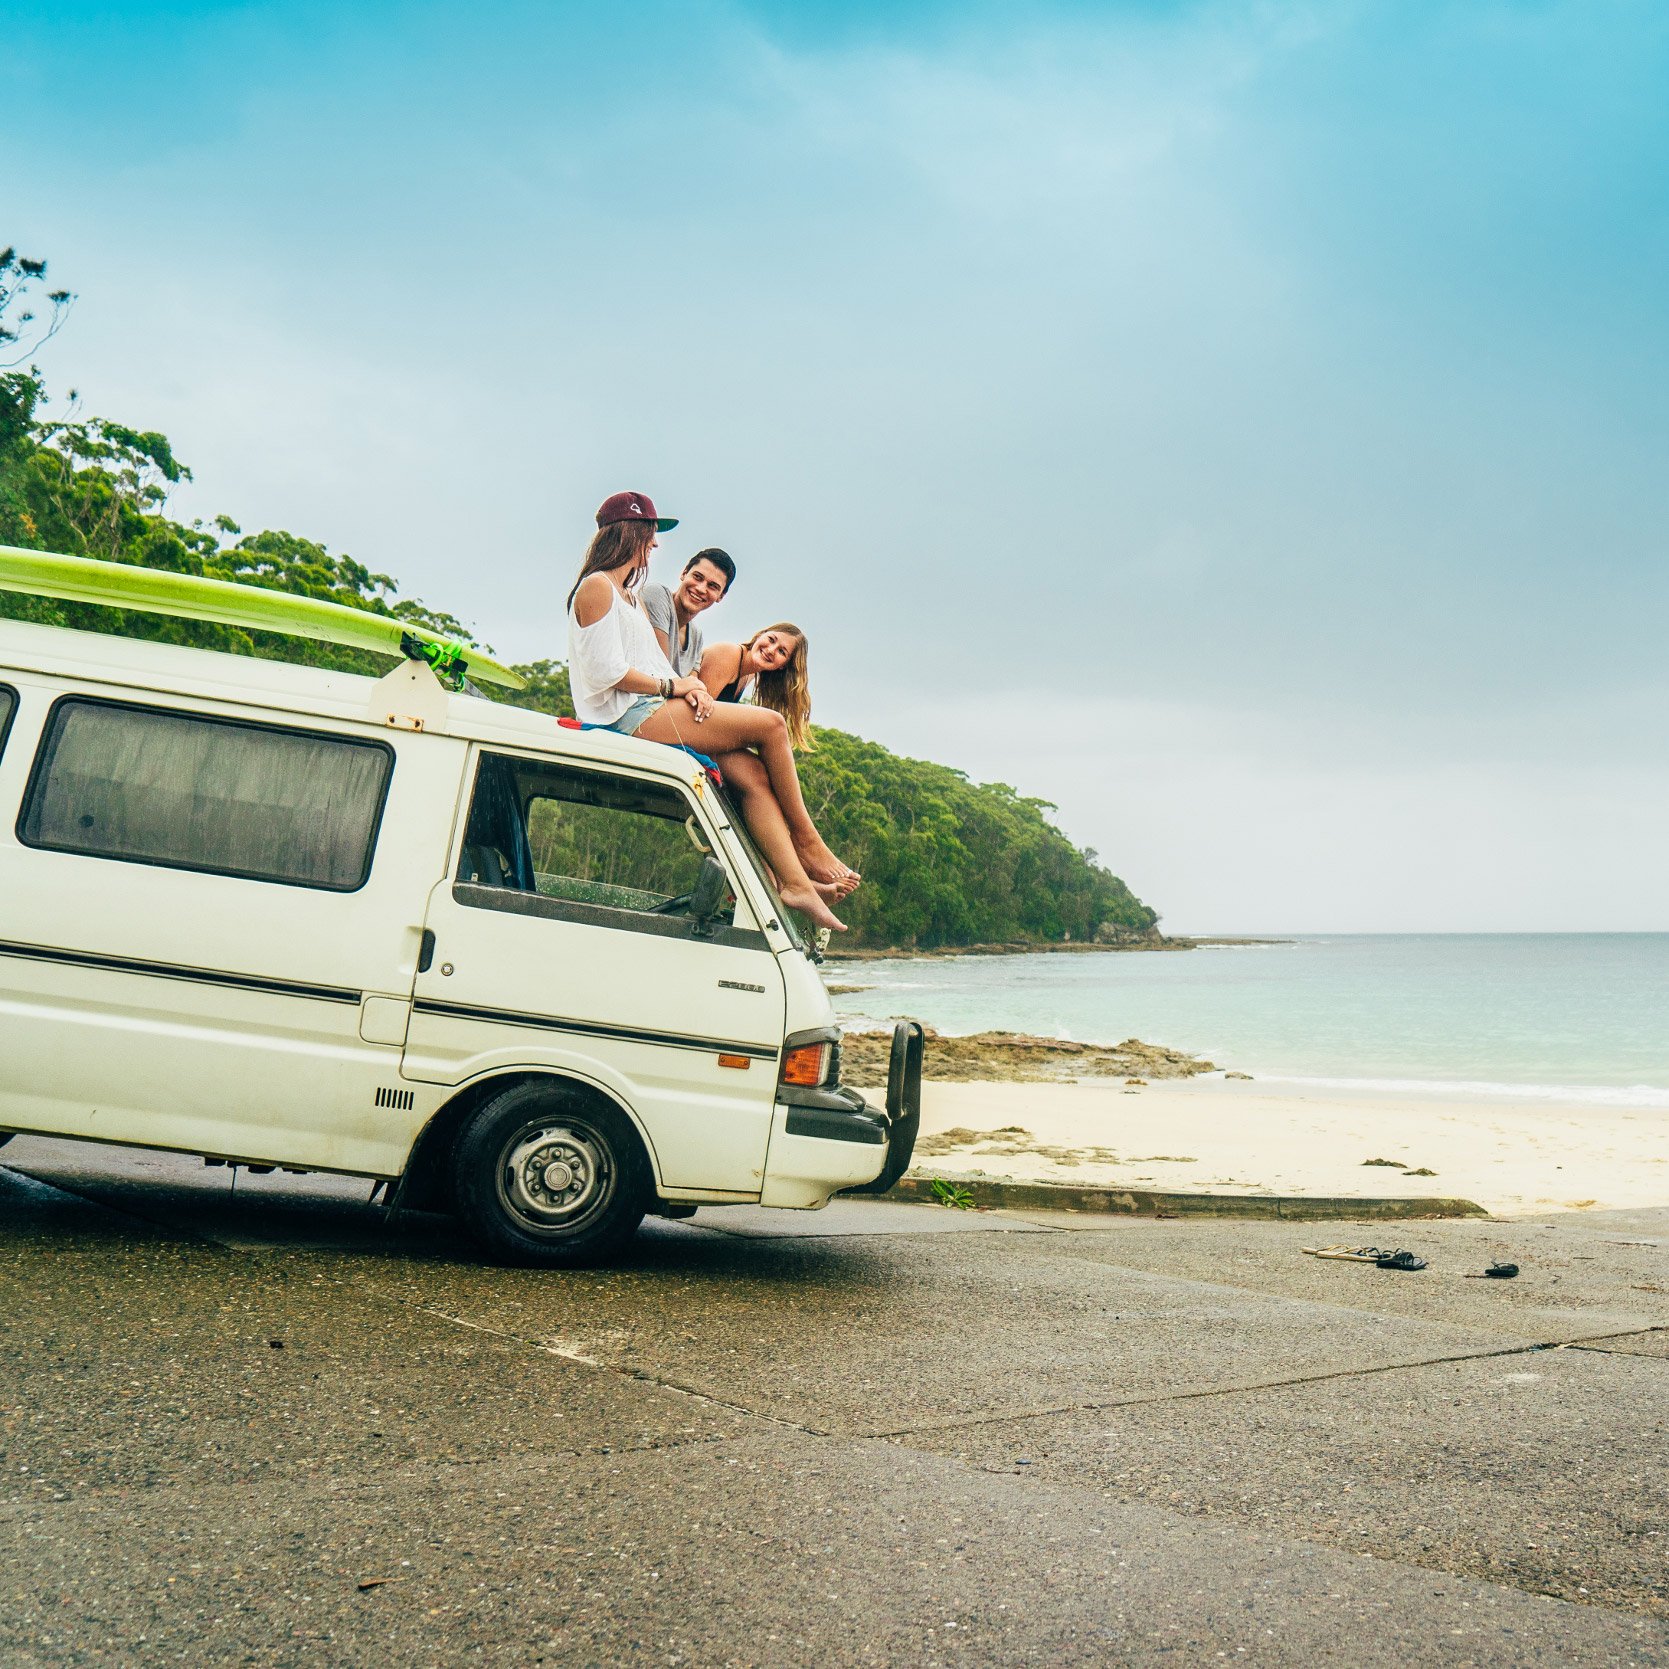 AIFS Australien: Personen erleben Surfen und Abenteuer mit Auto und Bully am Strand.